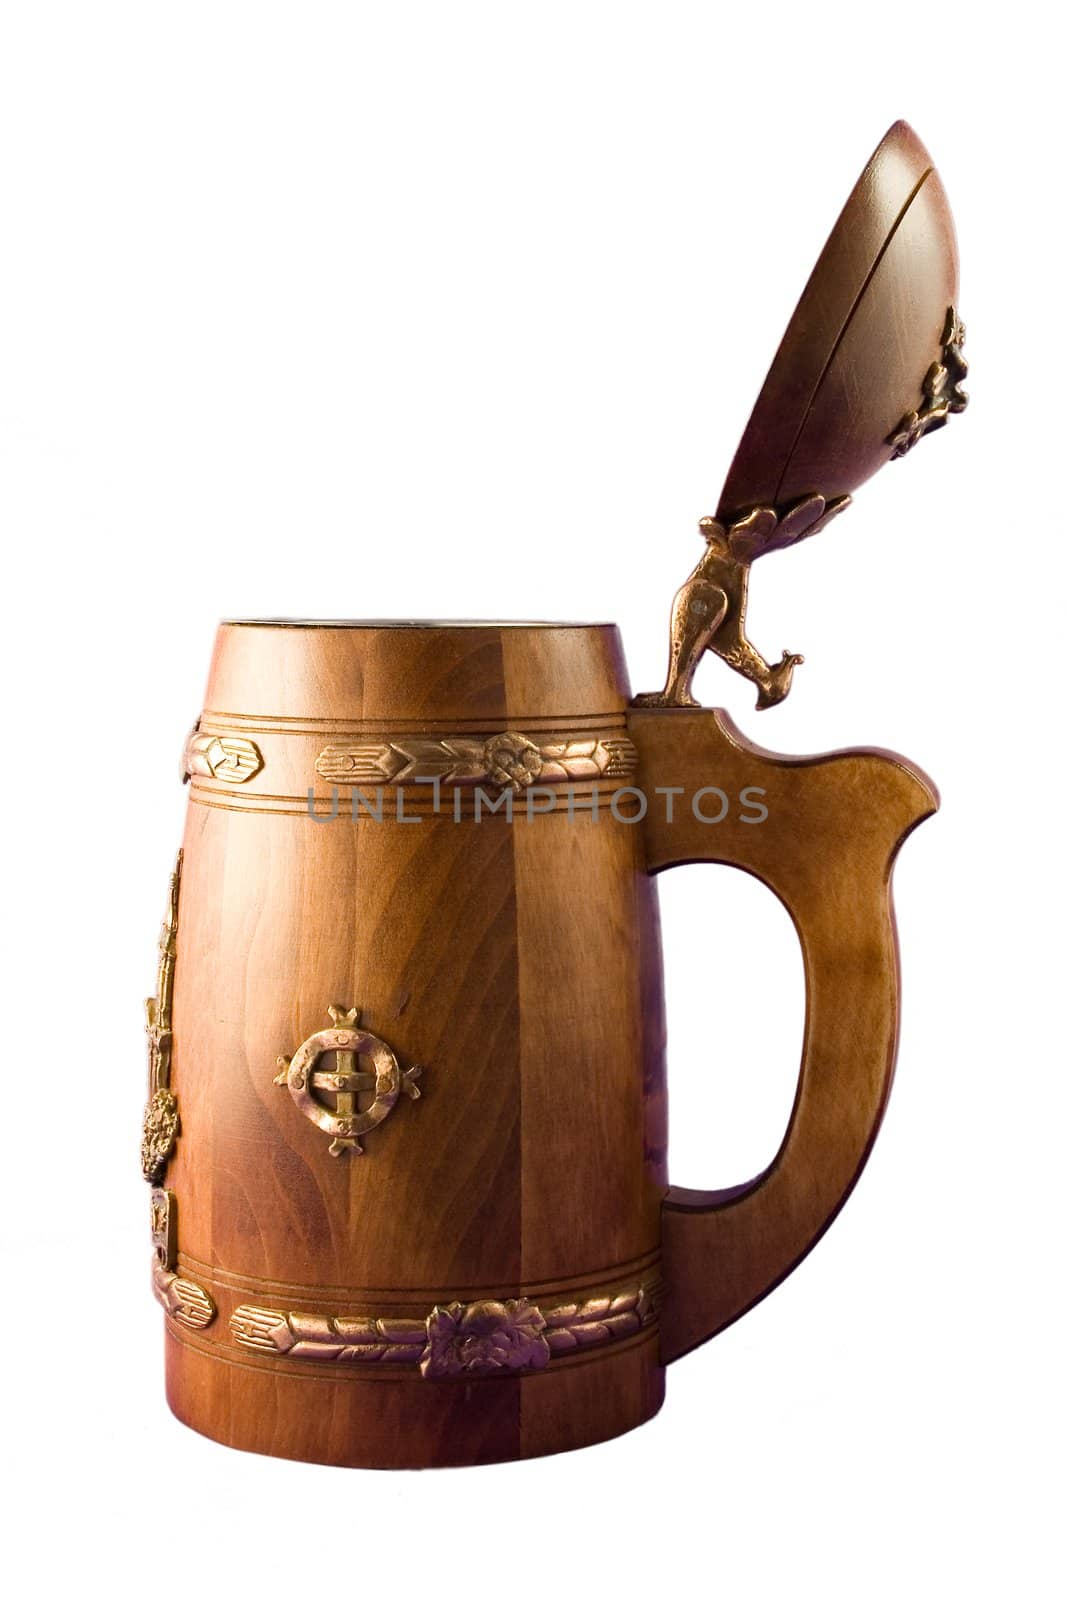 Beer mug by Vladimir